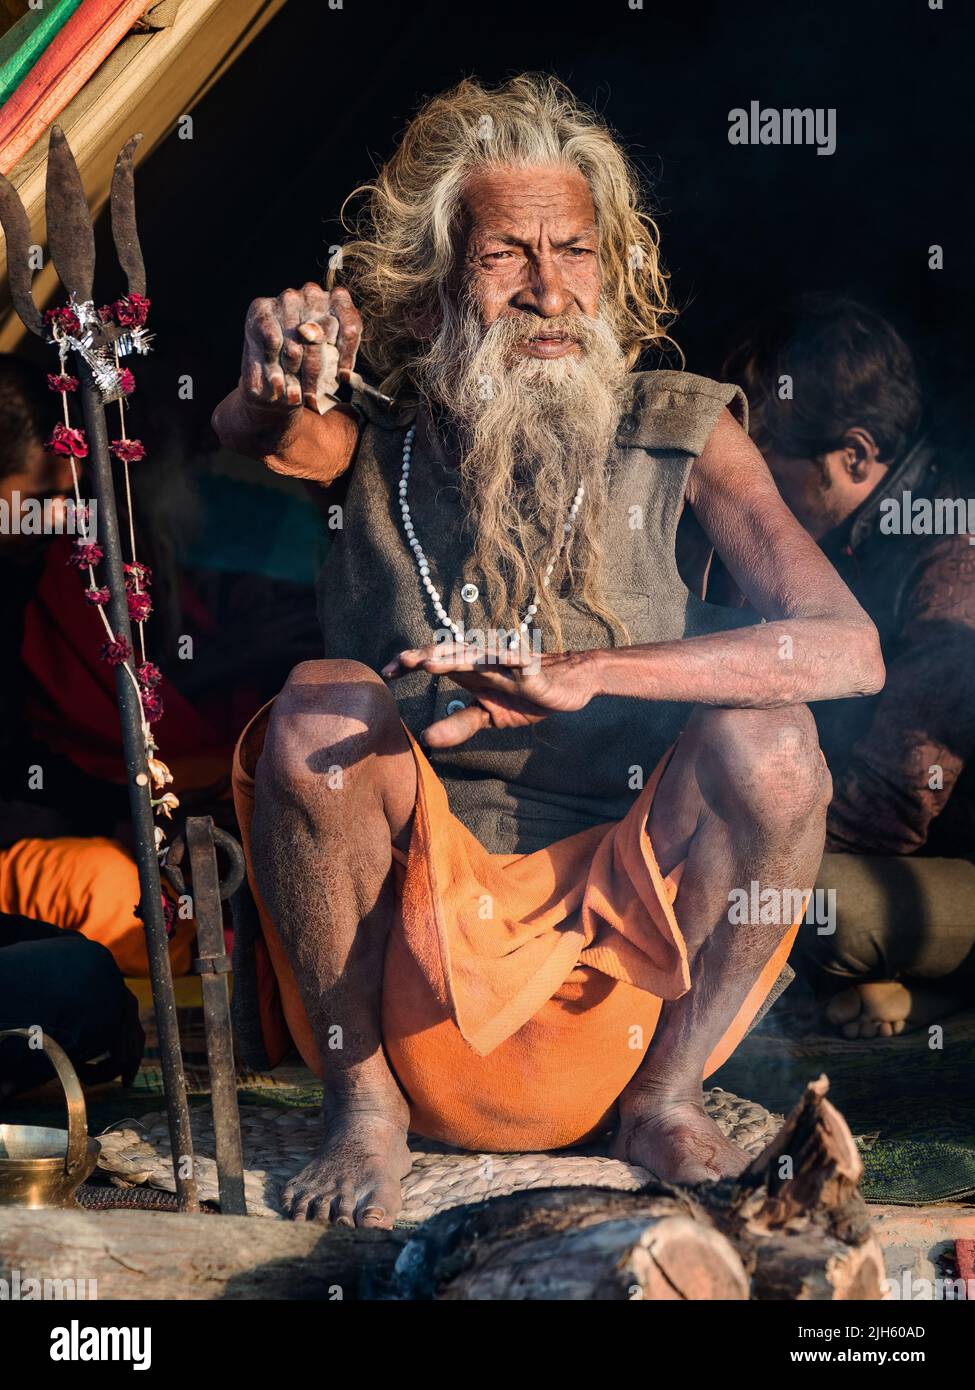 El santo hombre indio Amar Bharati Urdhavahu, que ha mantenido su brazo levantado por más de 40 años en honor del dios hindú Shiva, en el Festival Kumbh Mela en la India. Foto de stock